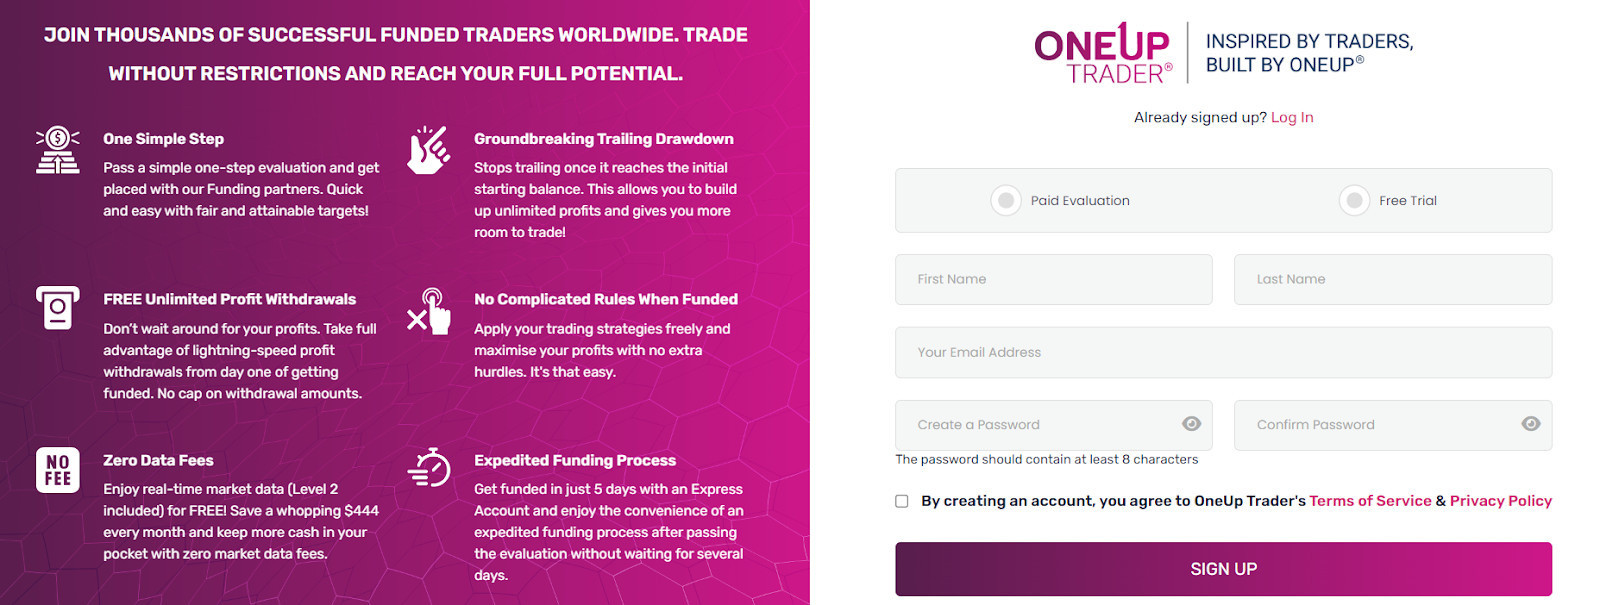 Descripción general de la cuenta de usuario de OneUp Trader: Registro